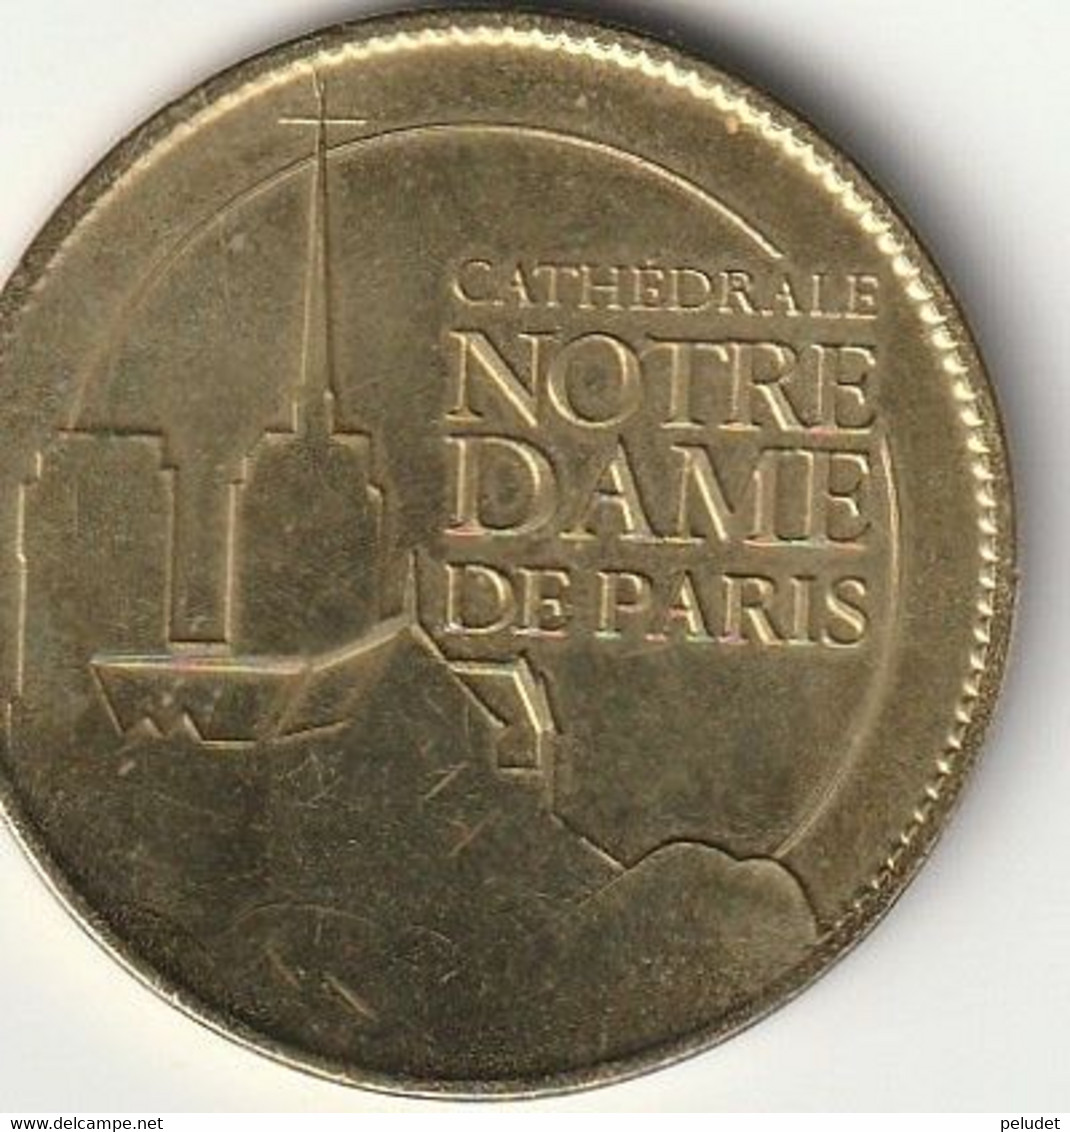 Cathedrale Notre Dame De Paris, Médaille Souvenir (jeton Touristique) Monnaie De Paris Arthus Bertrand - Undated